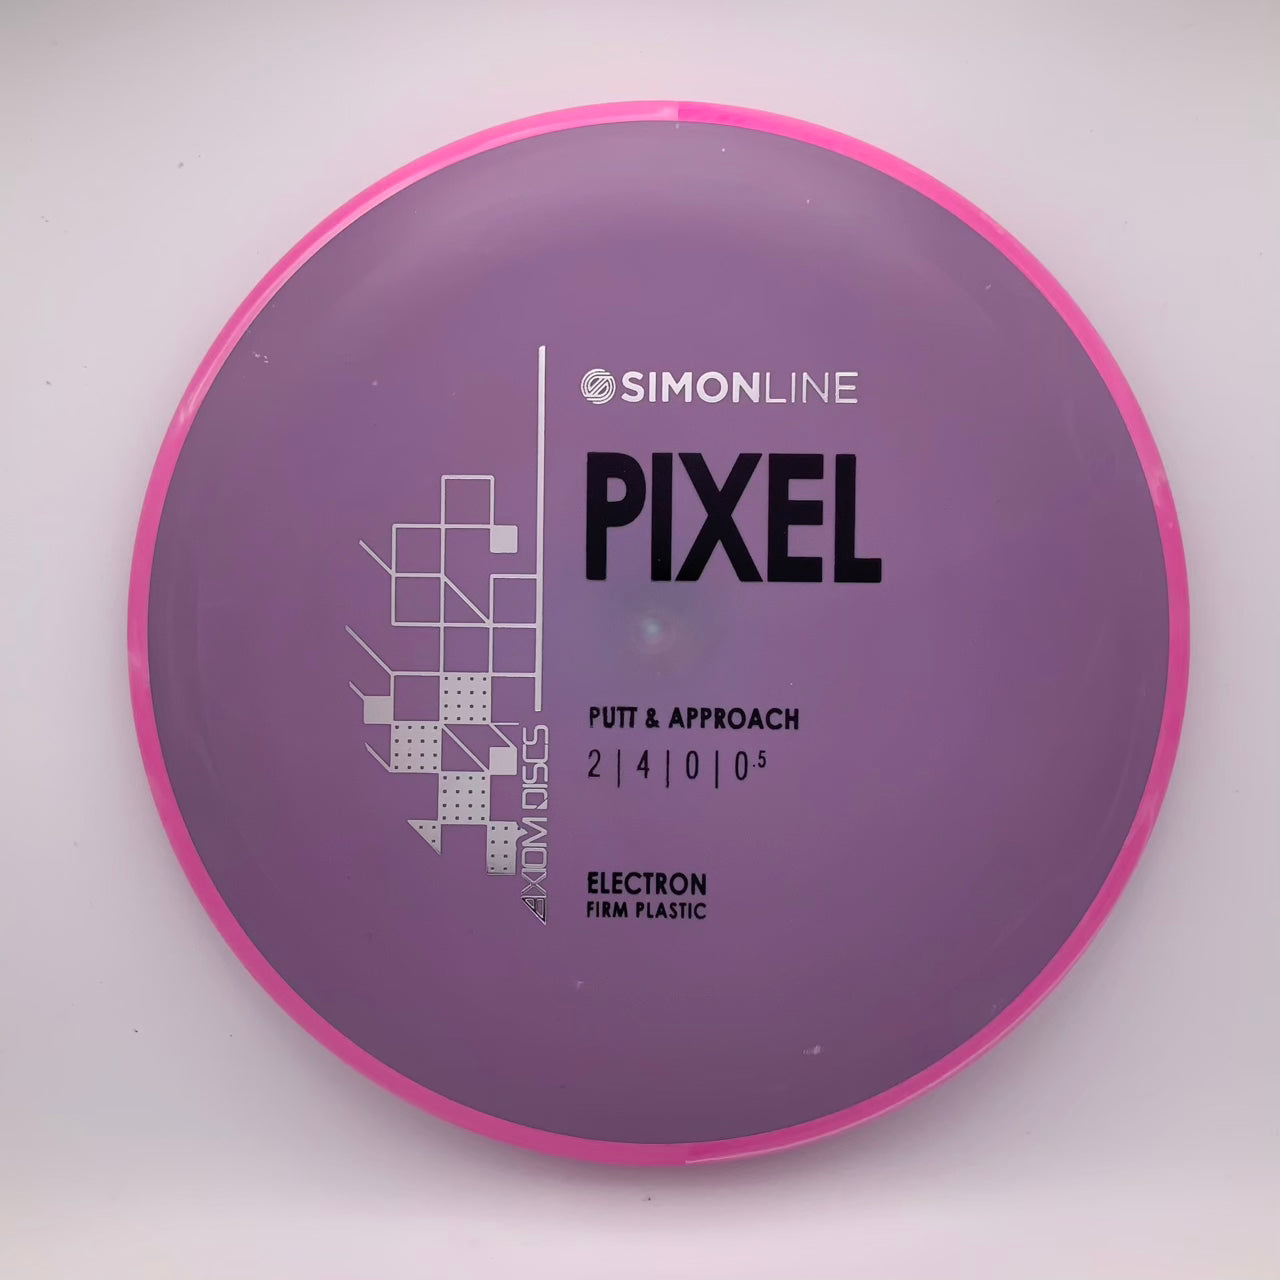 Axiom Pixel - Electron Firm - Astro Discs TX - Houston Disc Golf